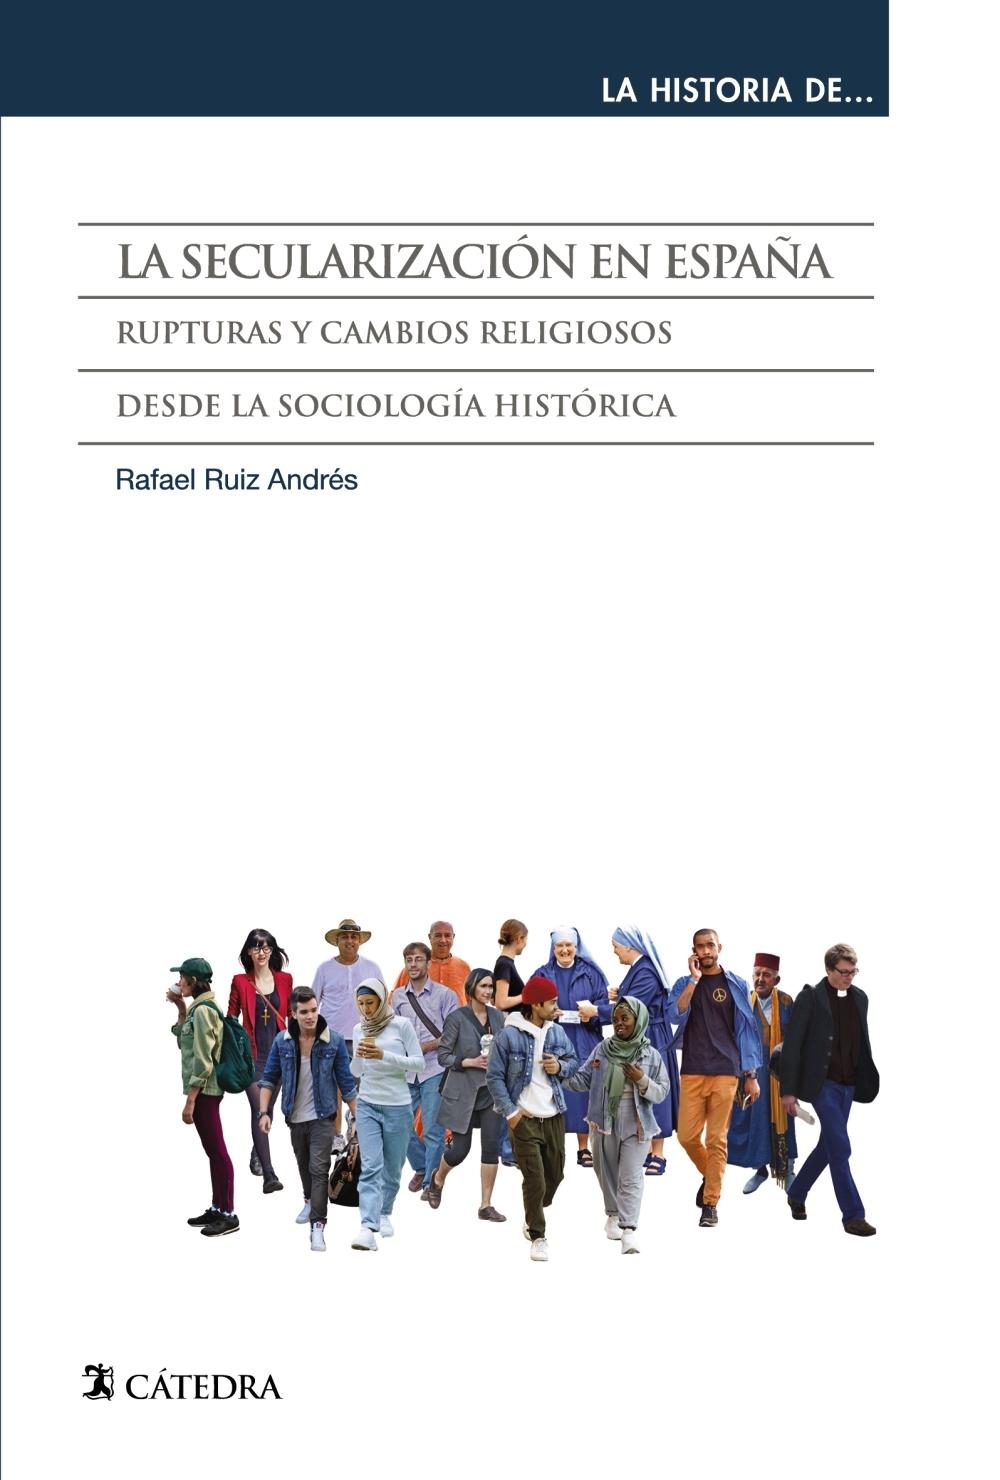 SECULARIZACION EN ESPAÑA, LA "RUPTURAS Y CAMBIOS RELIGIOSOS DESDE LA SOCIOLOGIA HISTORICA". 